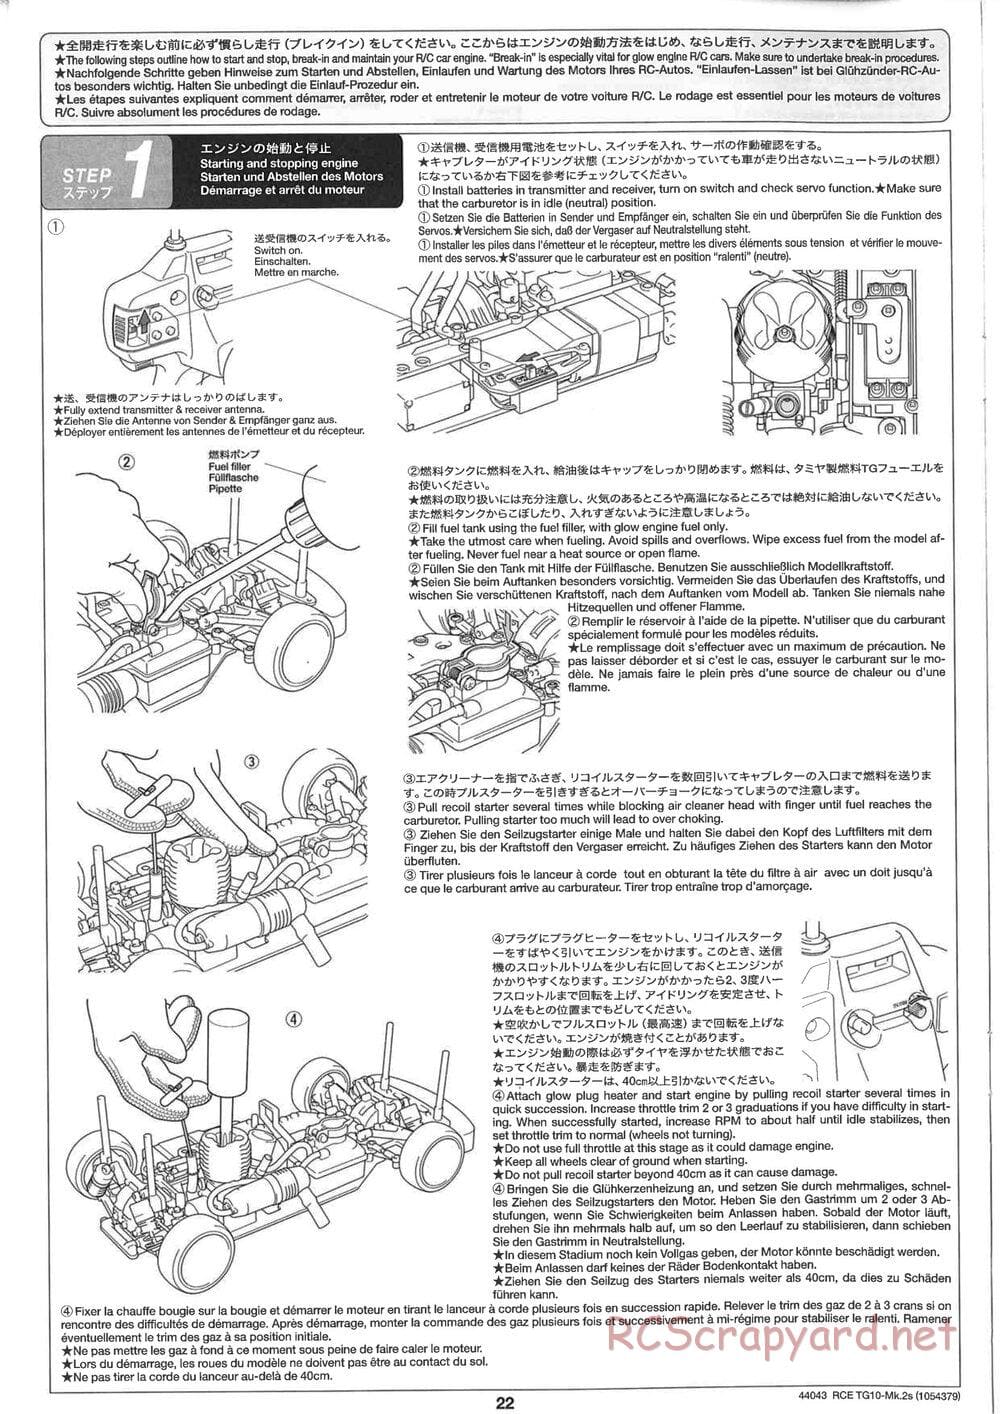 Tamiya - TG10 Mk.2s Chassis - Manual - Page 23